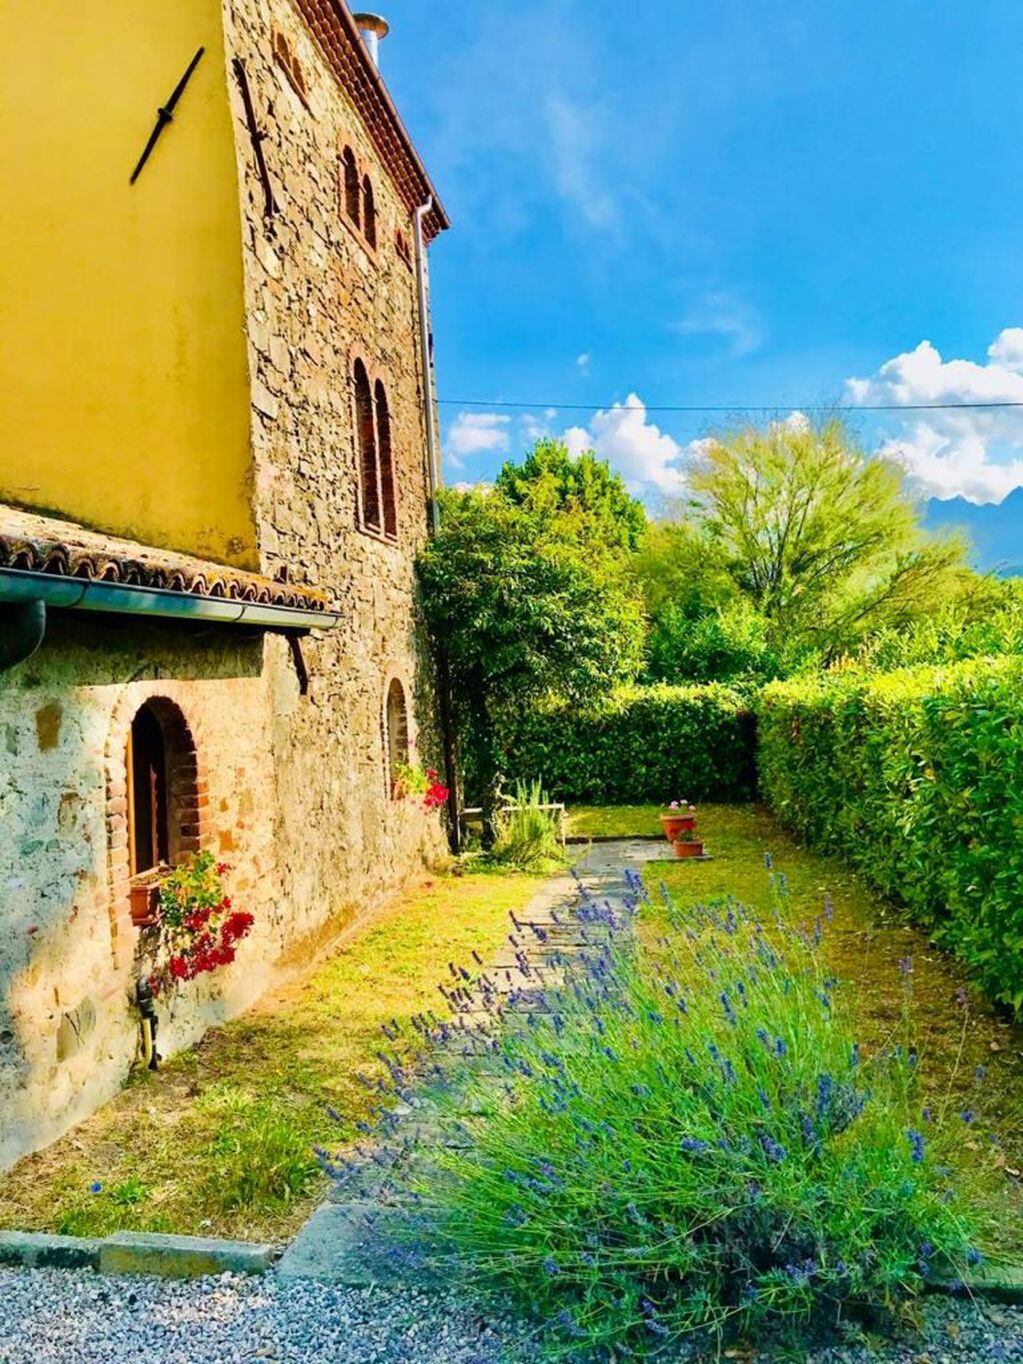 Sortean una gran mansión en La Toscana por 27 euros para un fin benéfico (web)